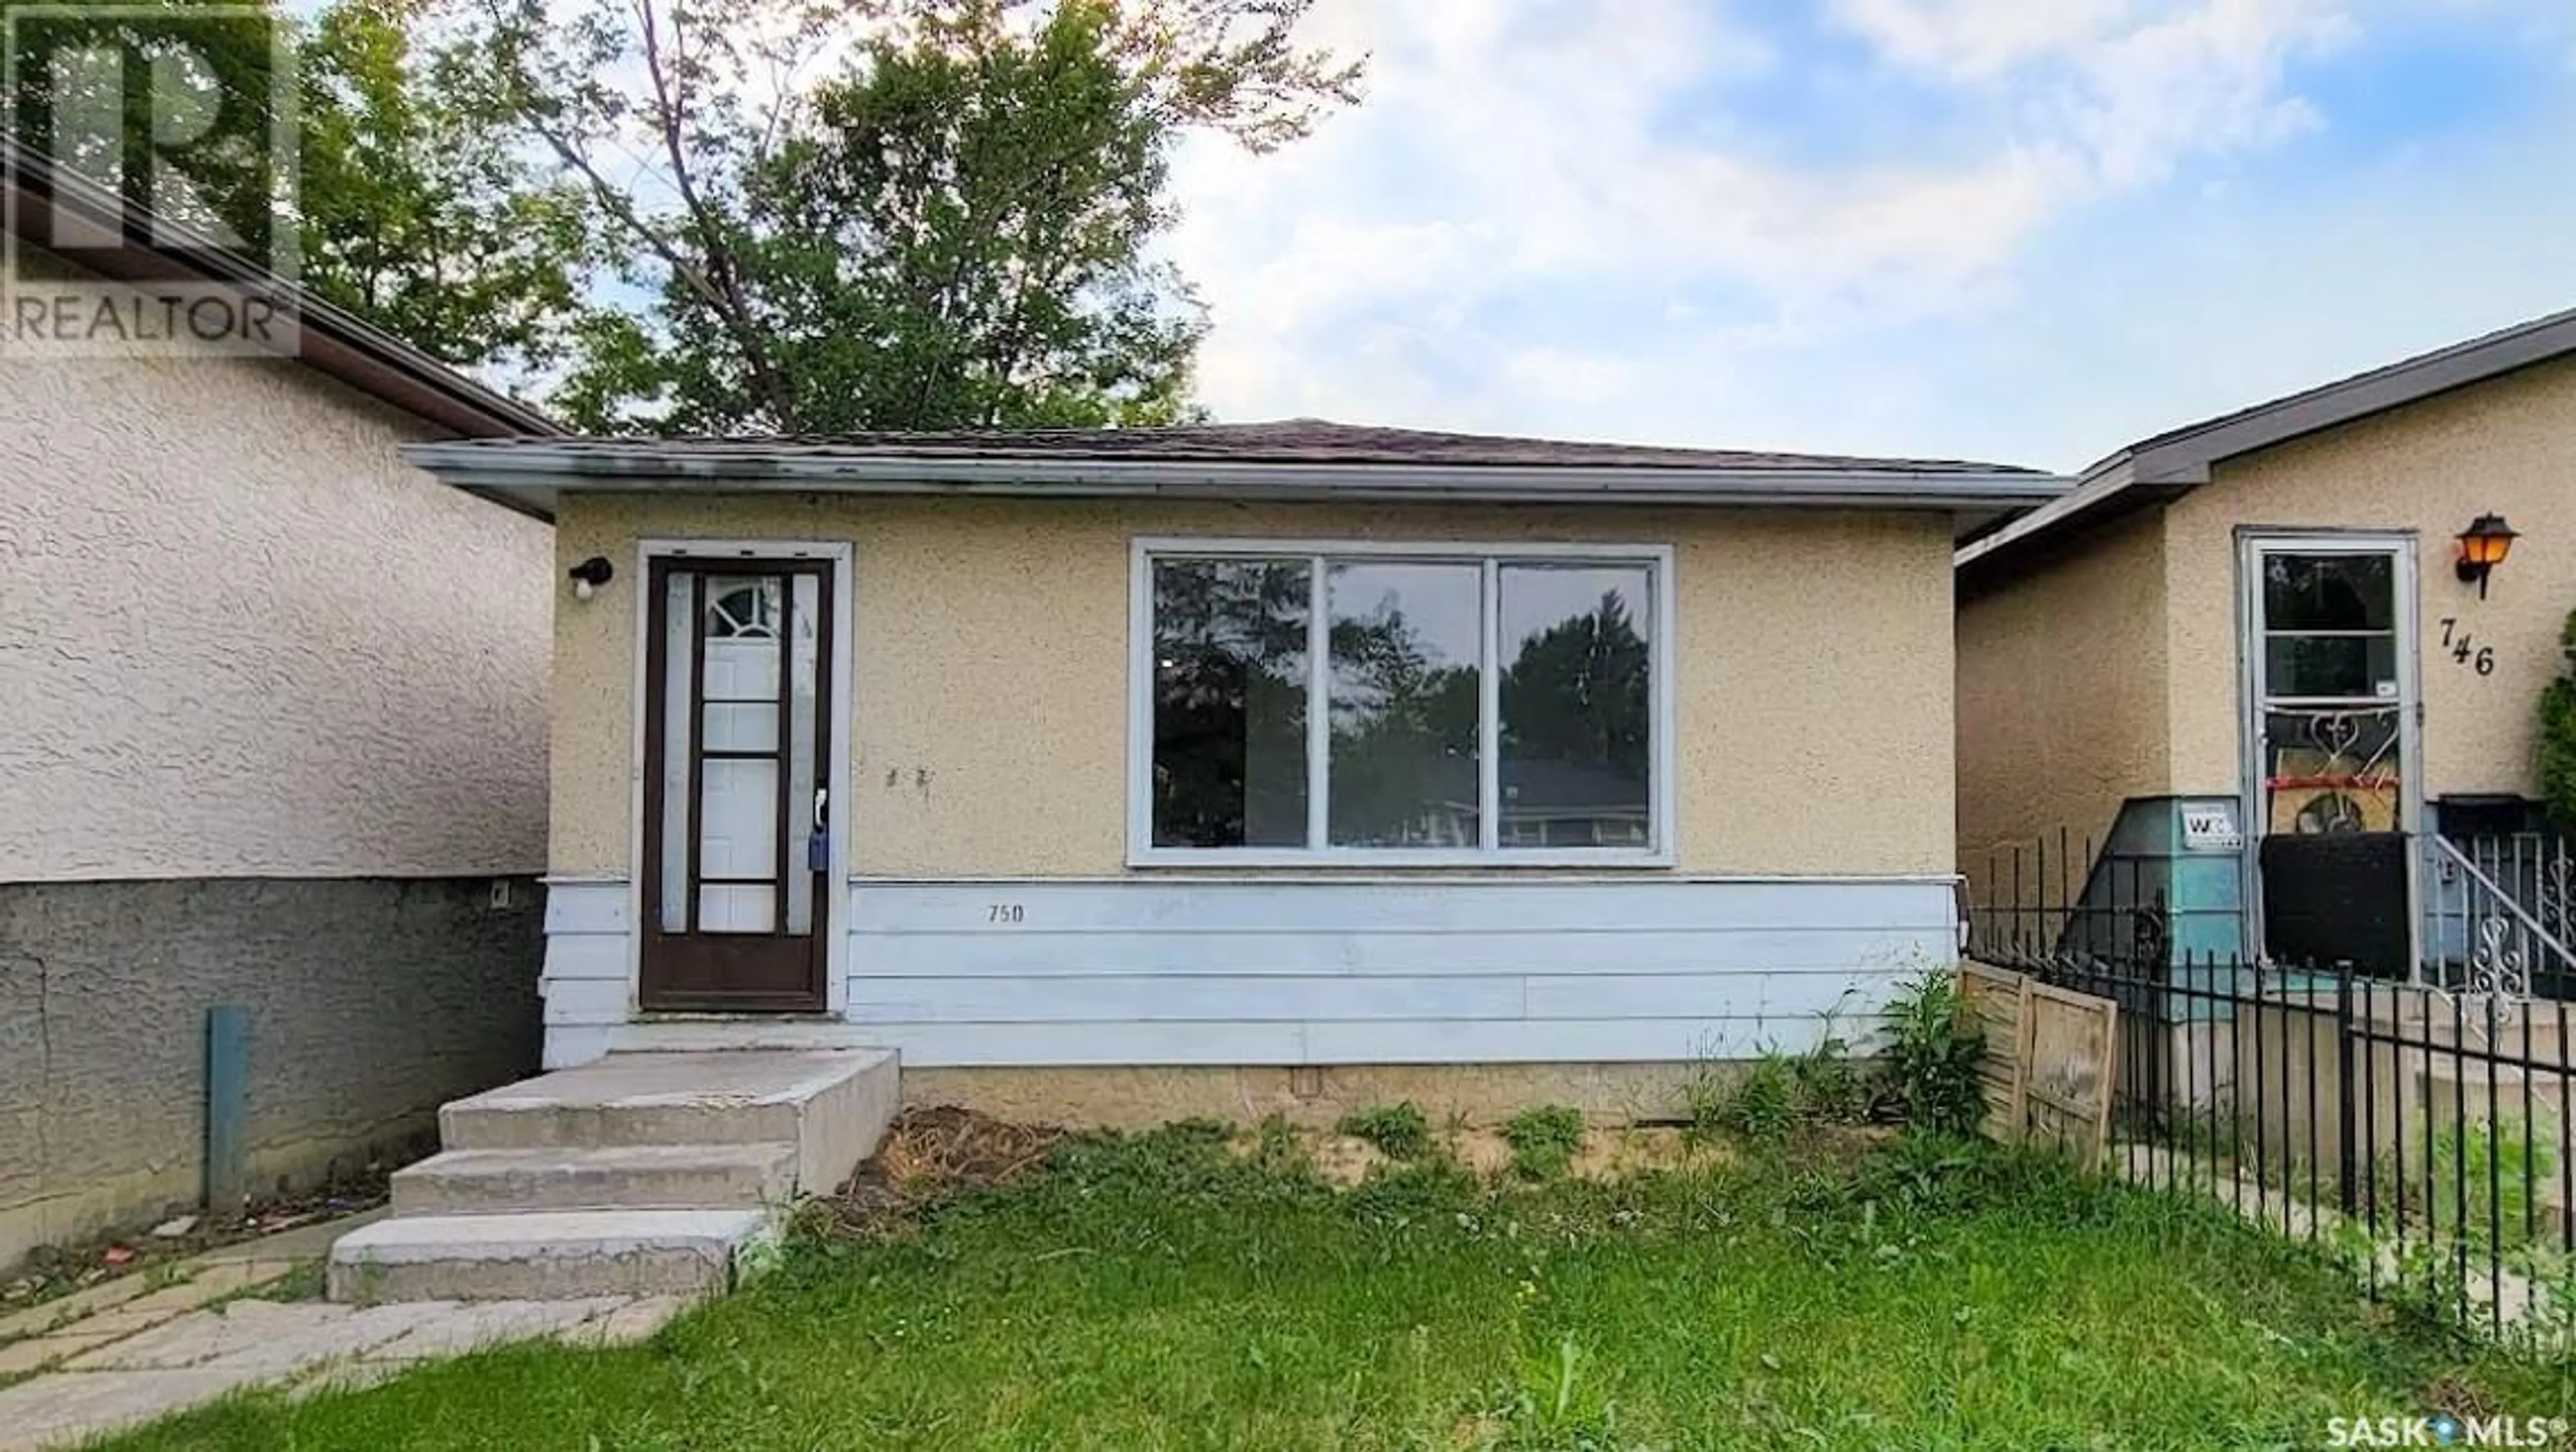 Frontside or backside of a home for 750 Retallack STREET, Regina Saskatchewan S4T2G6